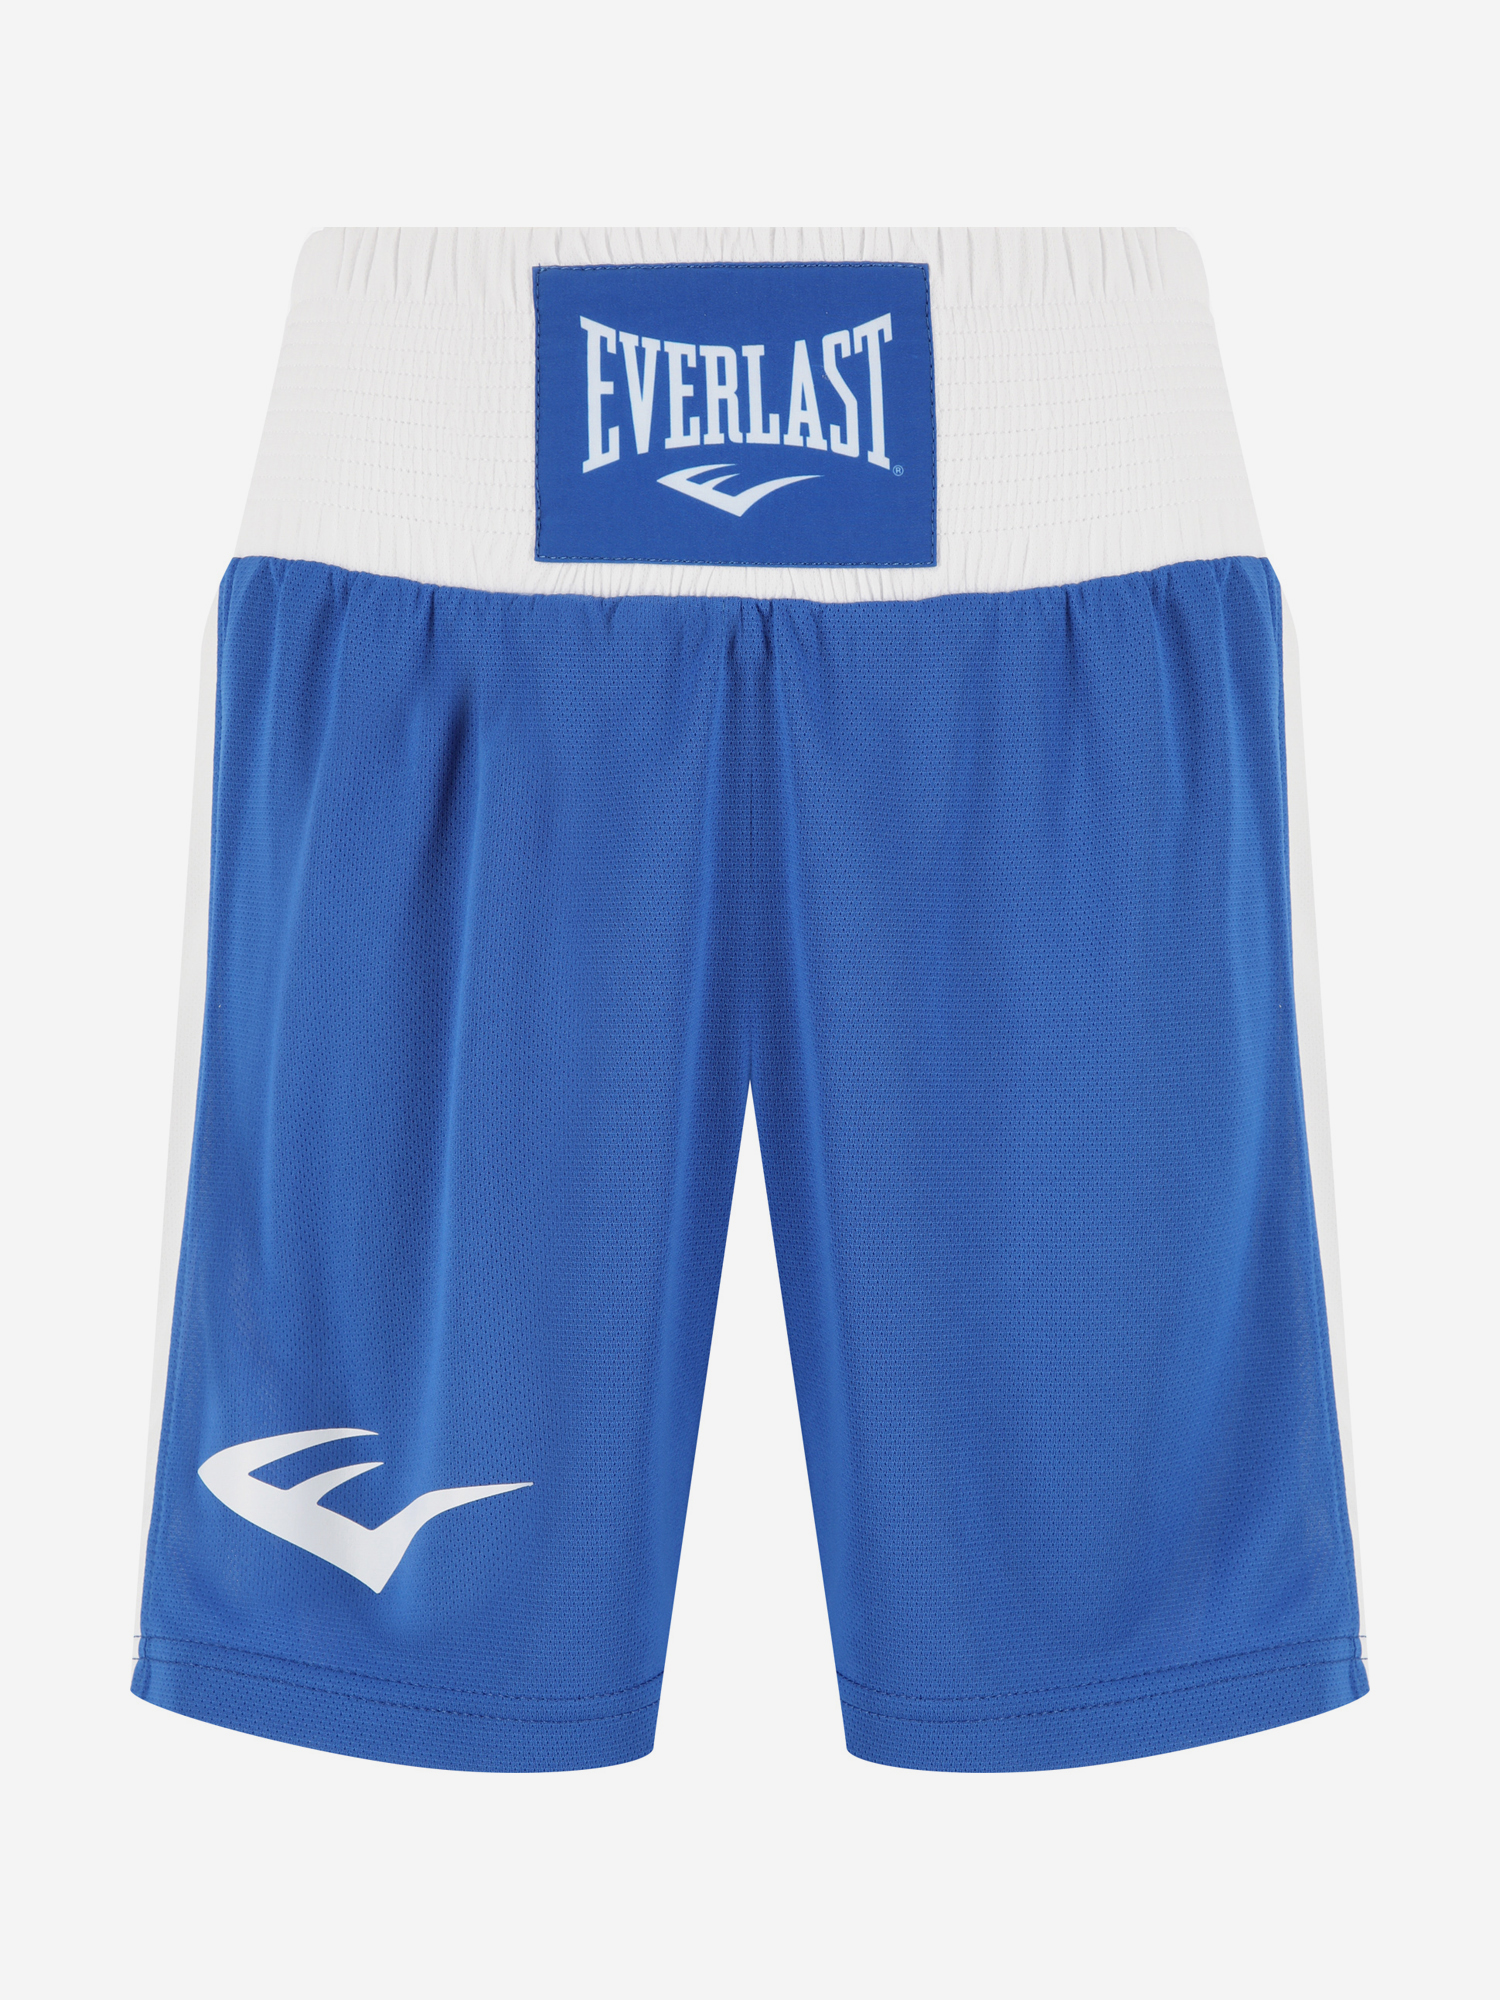 Шорты для бокса Everlast Shorts Elite, Синий шапка everlast wagner light синий